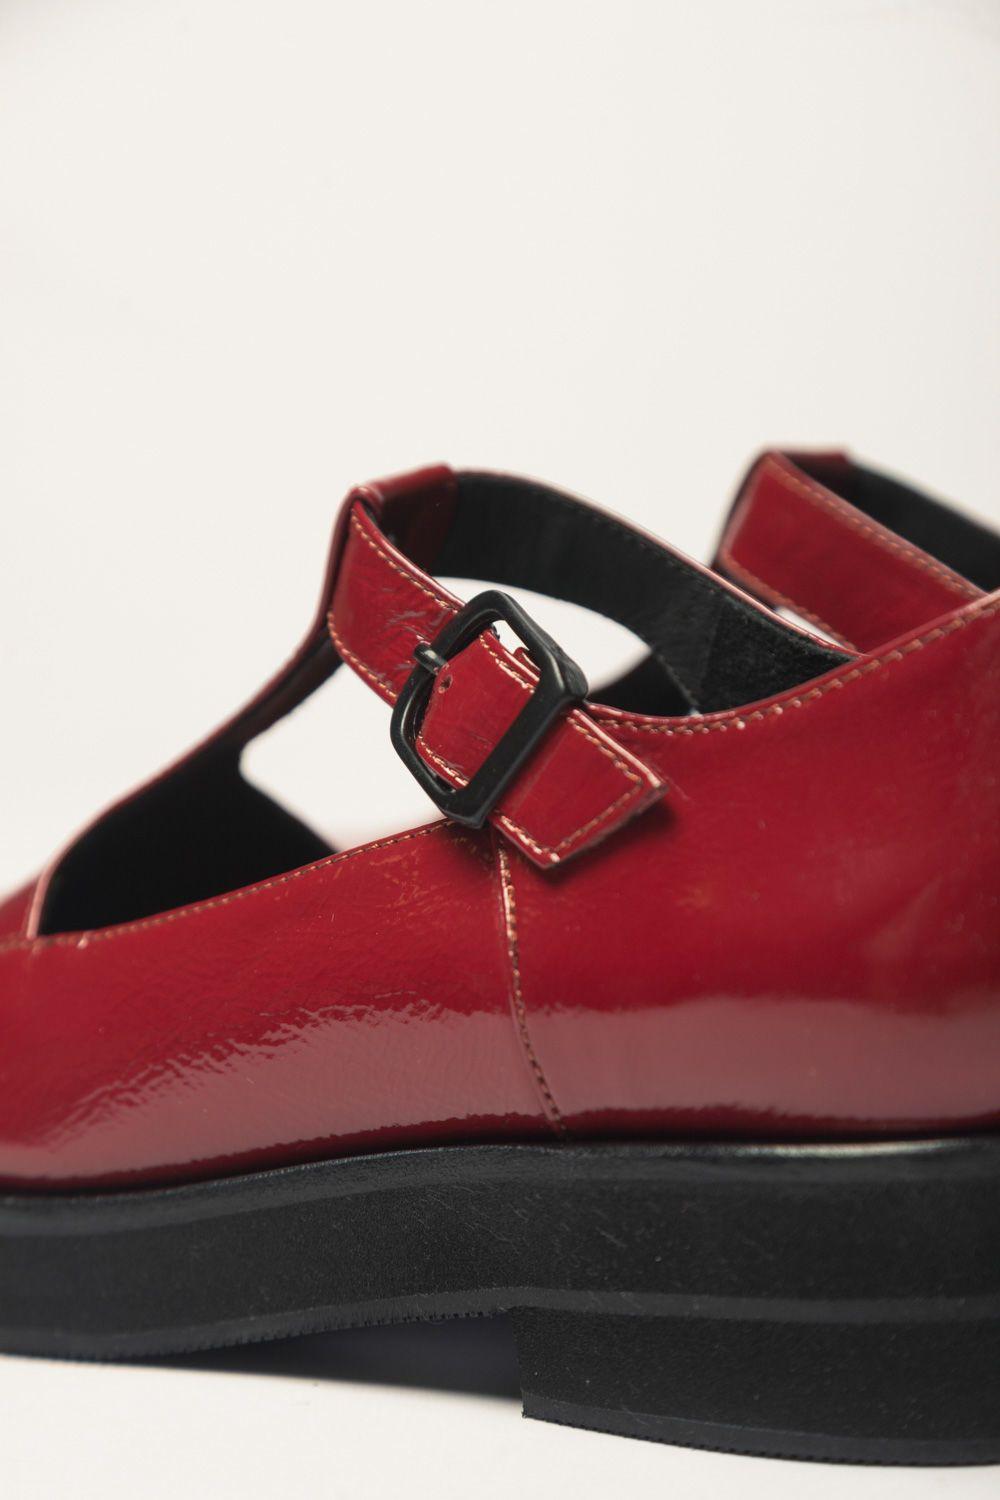 Zapato Guillermina Rojo 37